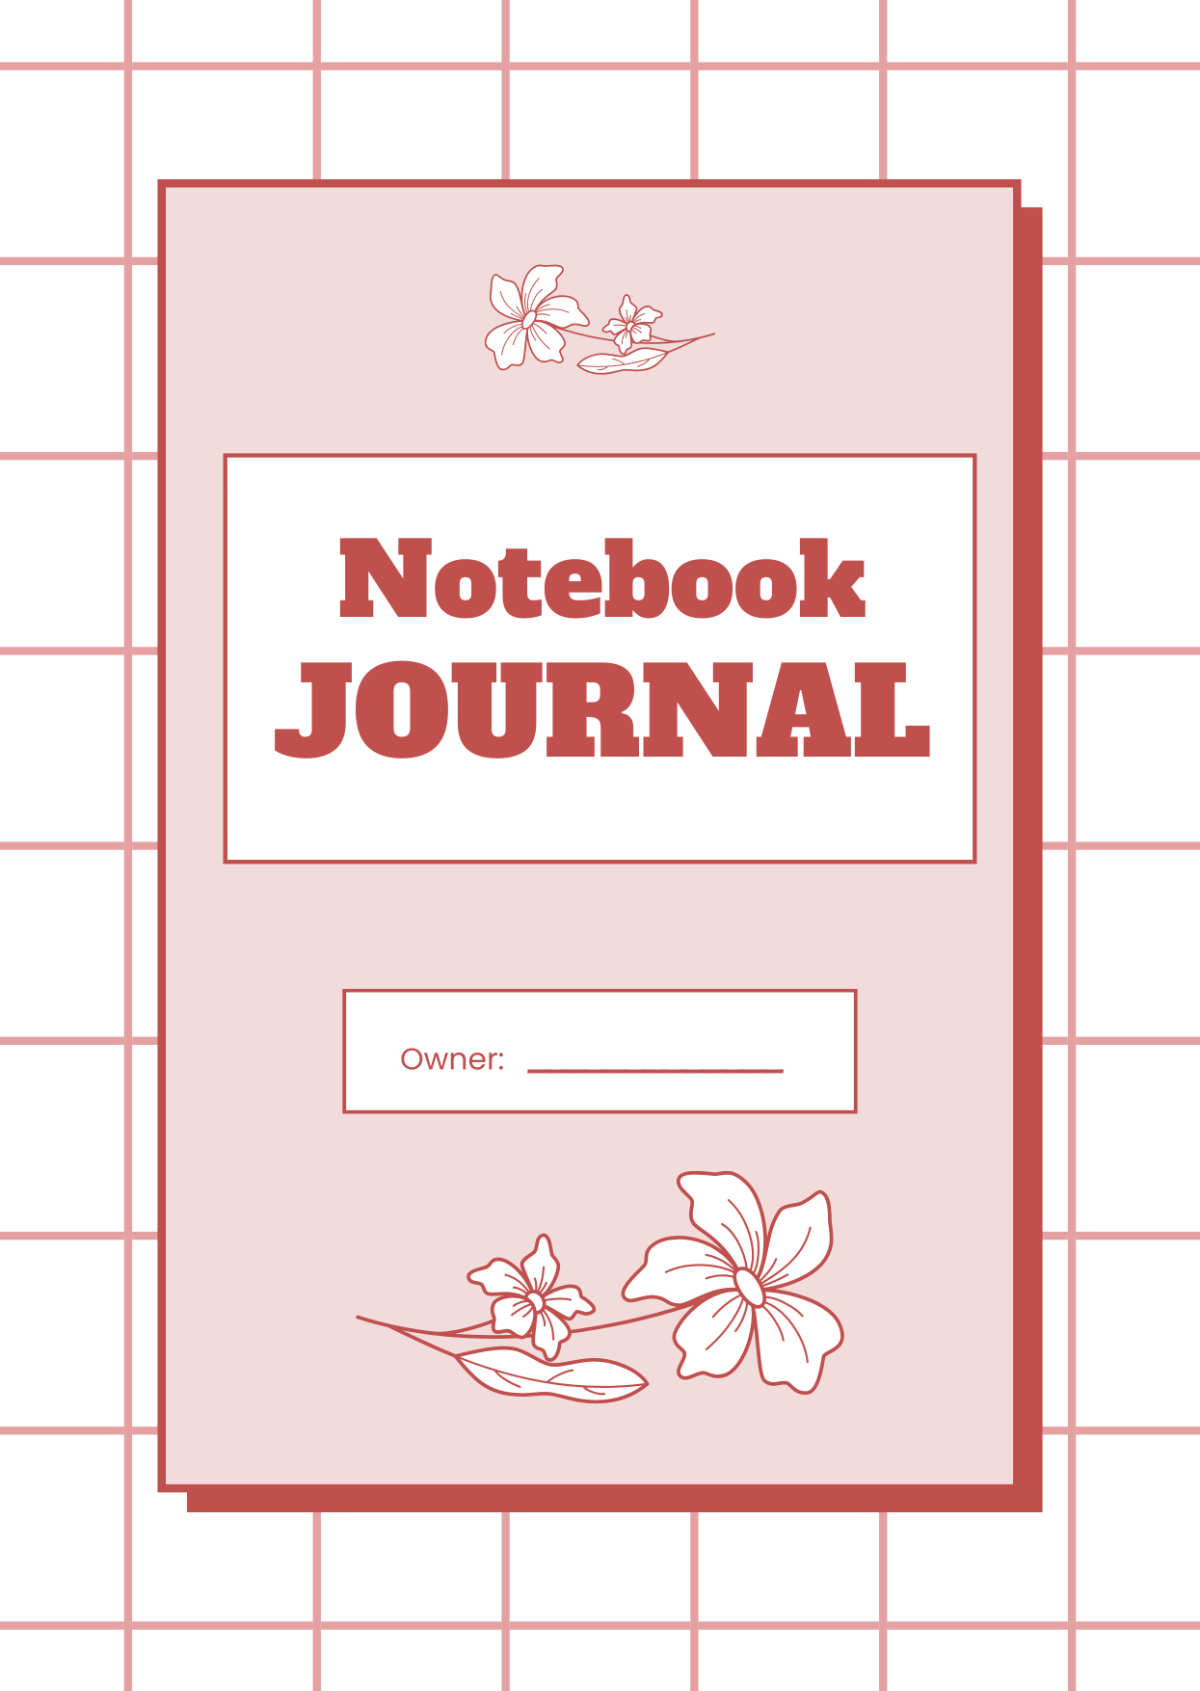 Editable Notebook Journals Template